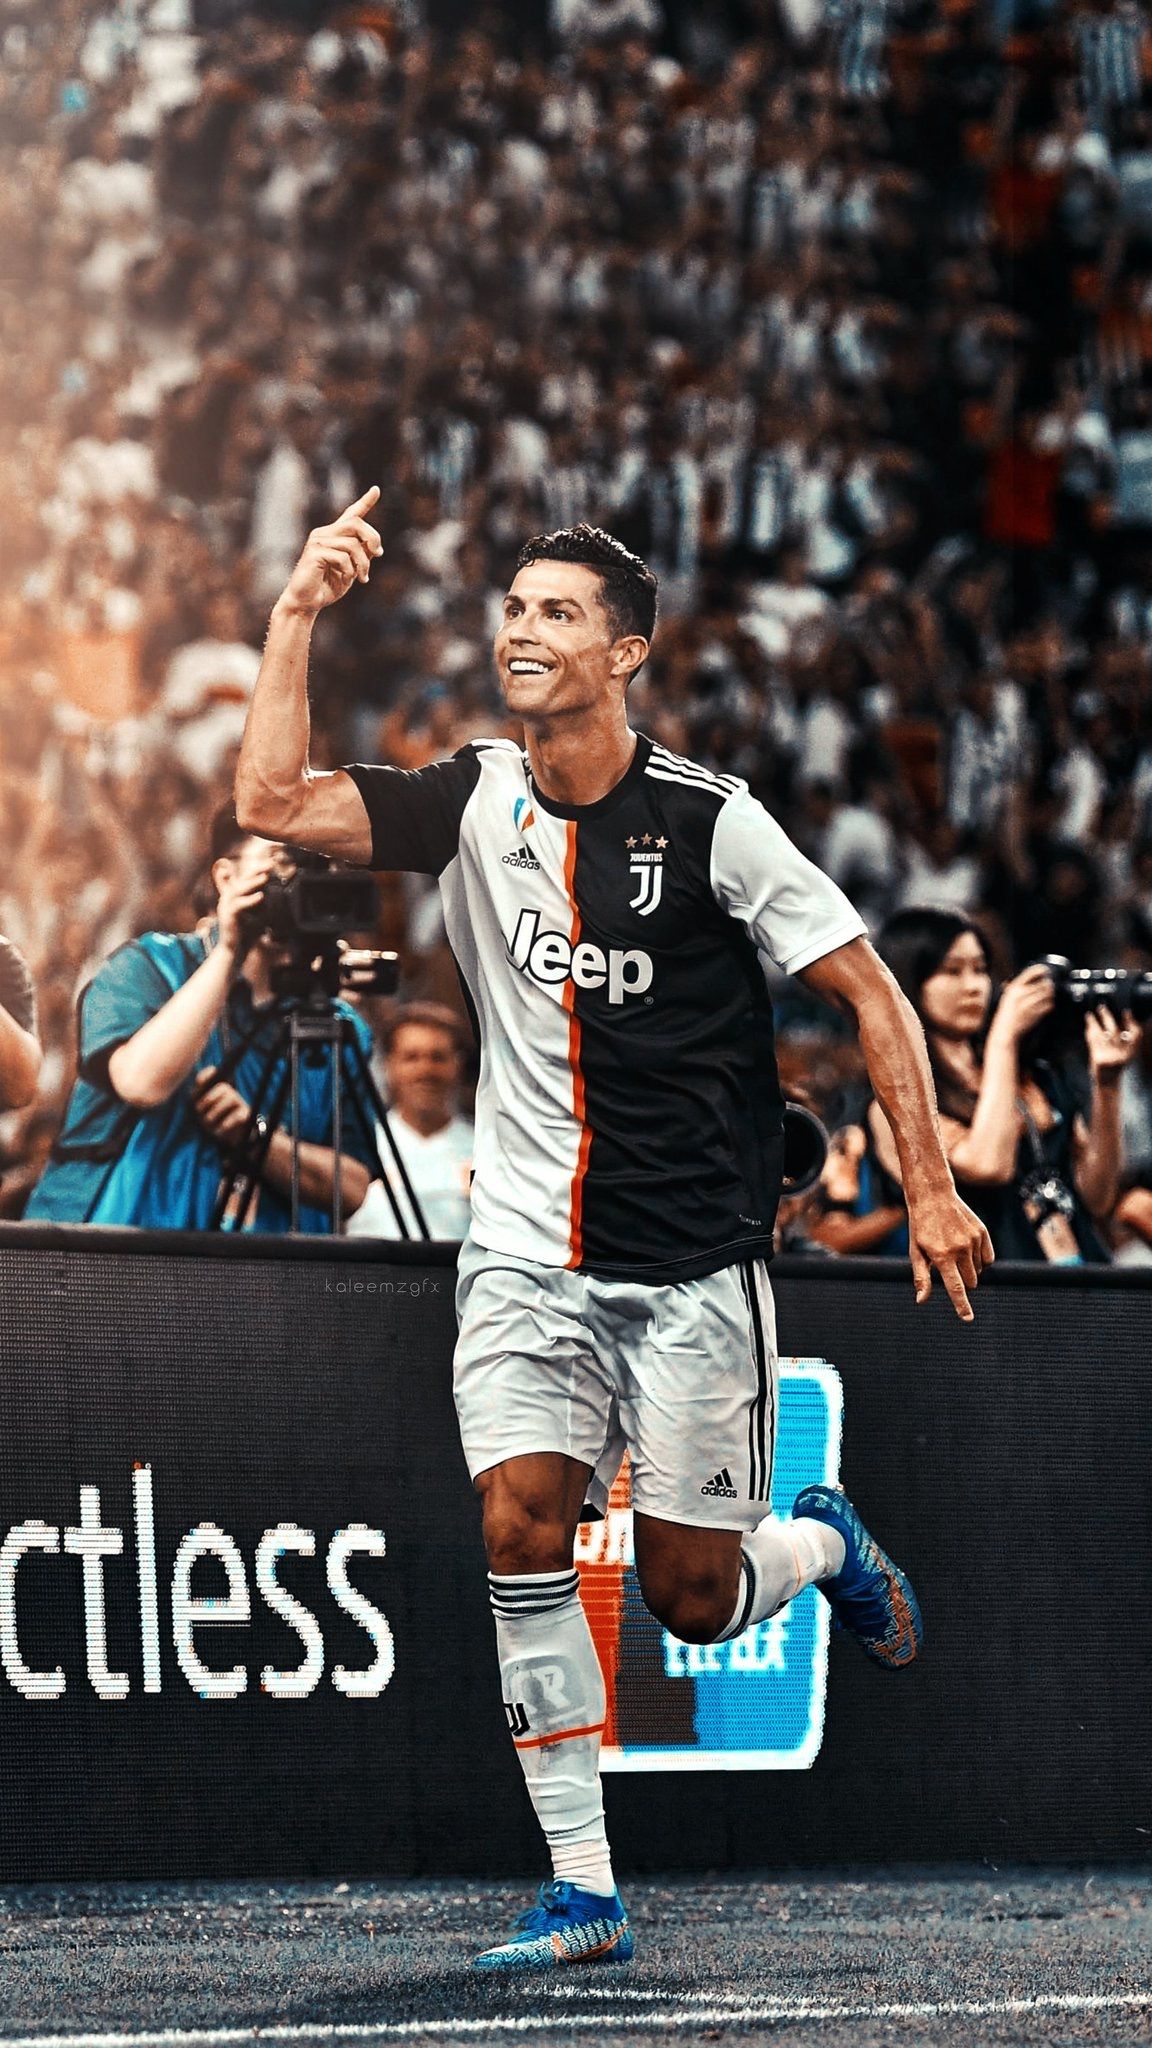 Hãy chiêm ngưỡng những hình ảnh nền Ronaldo tuyệt đẹp, để bạn cảm nhận được tinh thần và năng lượng tích cực từ siêu sao này. Hãy trang trí màn hình của bạn với ảnh nền Ronaldo và truyền tải sự bản lĩnh và quyết tâm của anh ta đến tất cả mọi người.